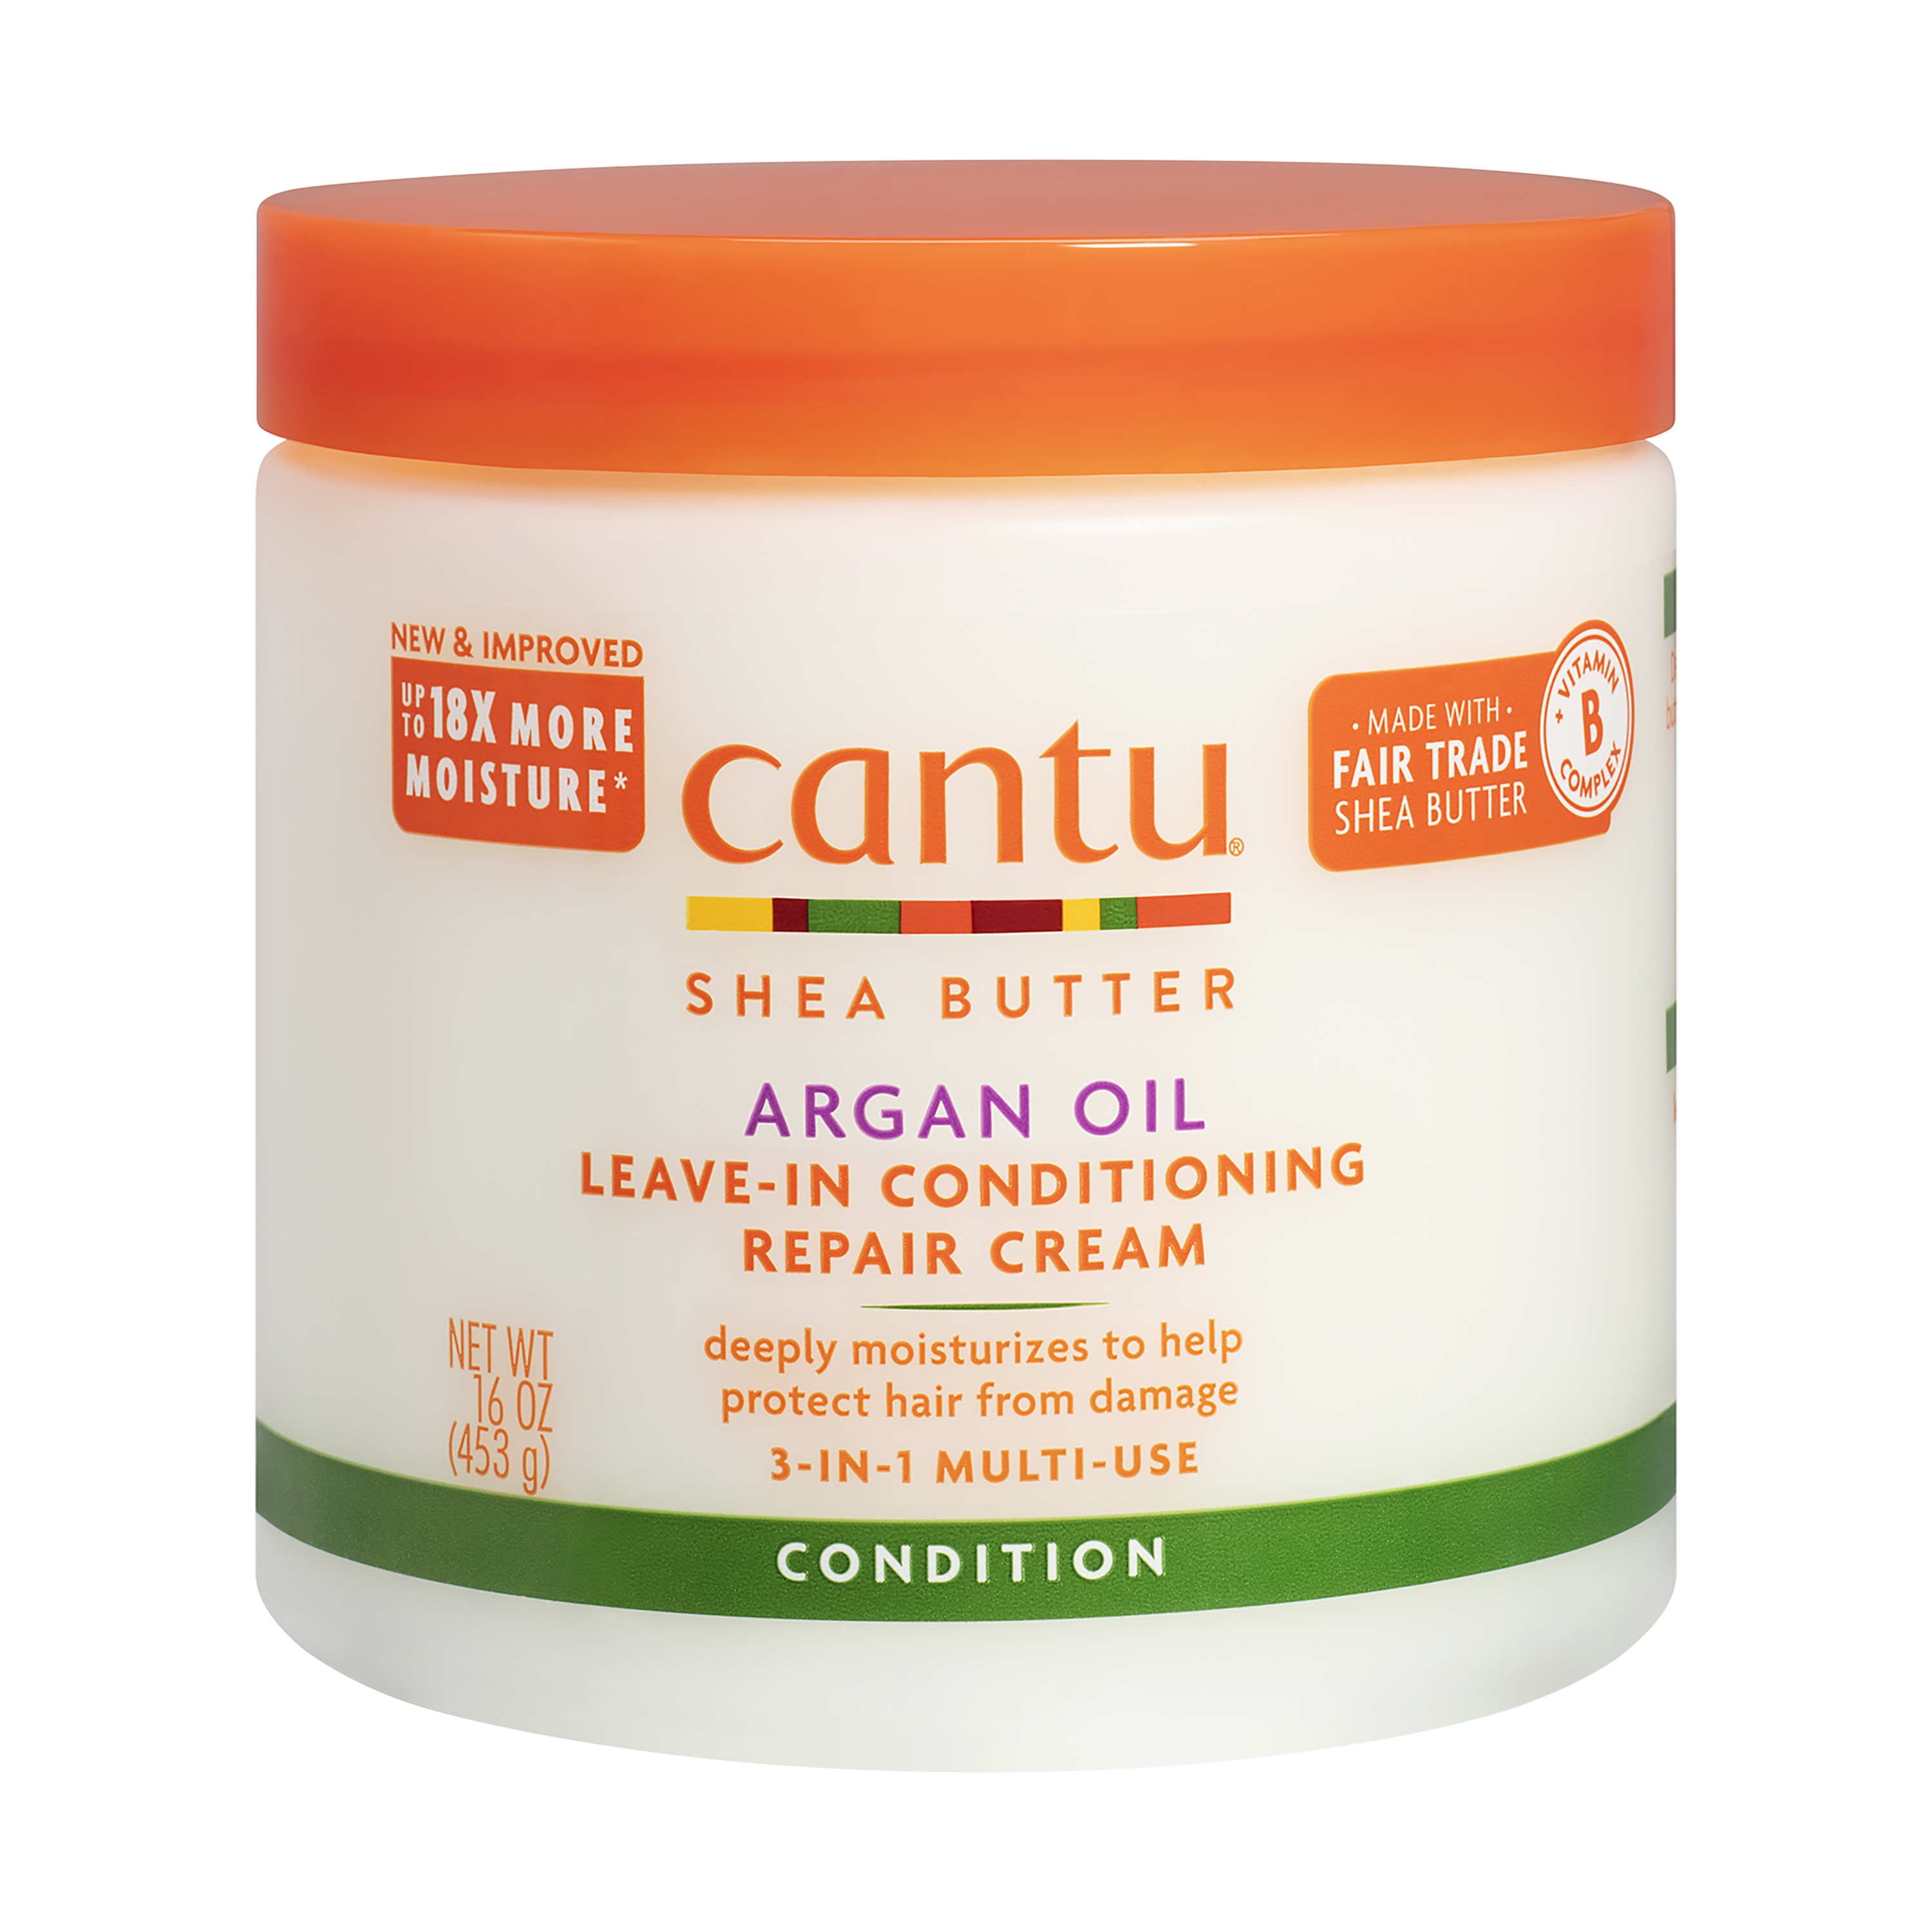 Cantu Argan Oil Leave-in Conditioning Repair Cream, 16 oz - image 1 of 12